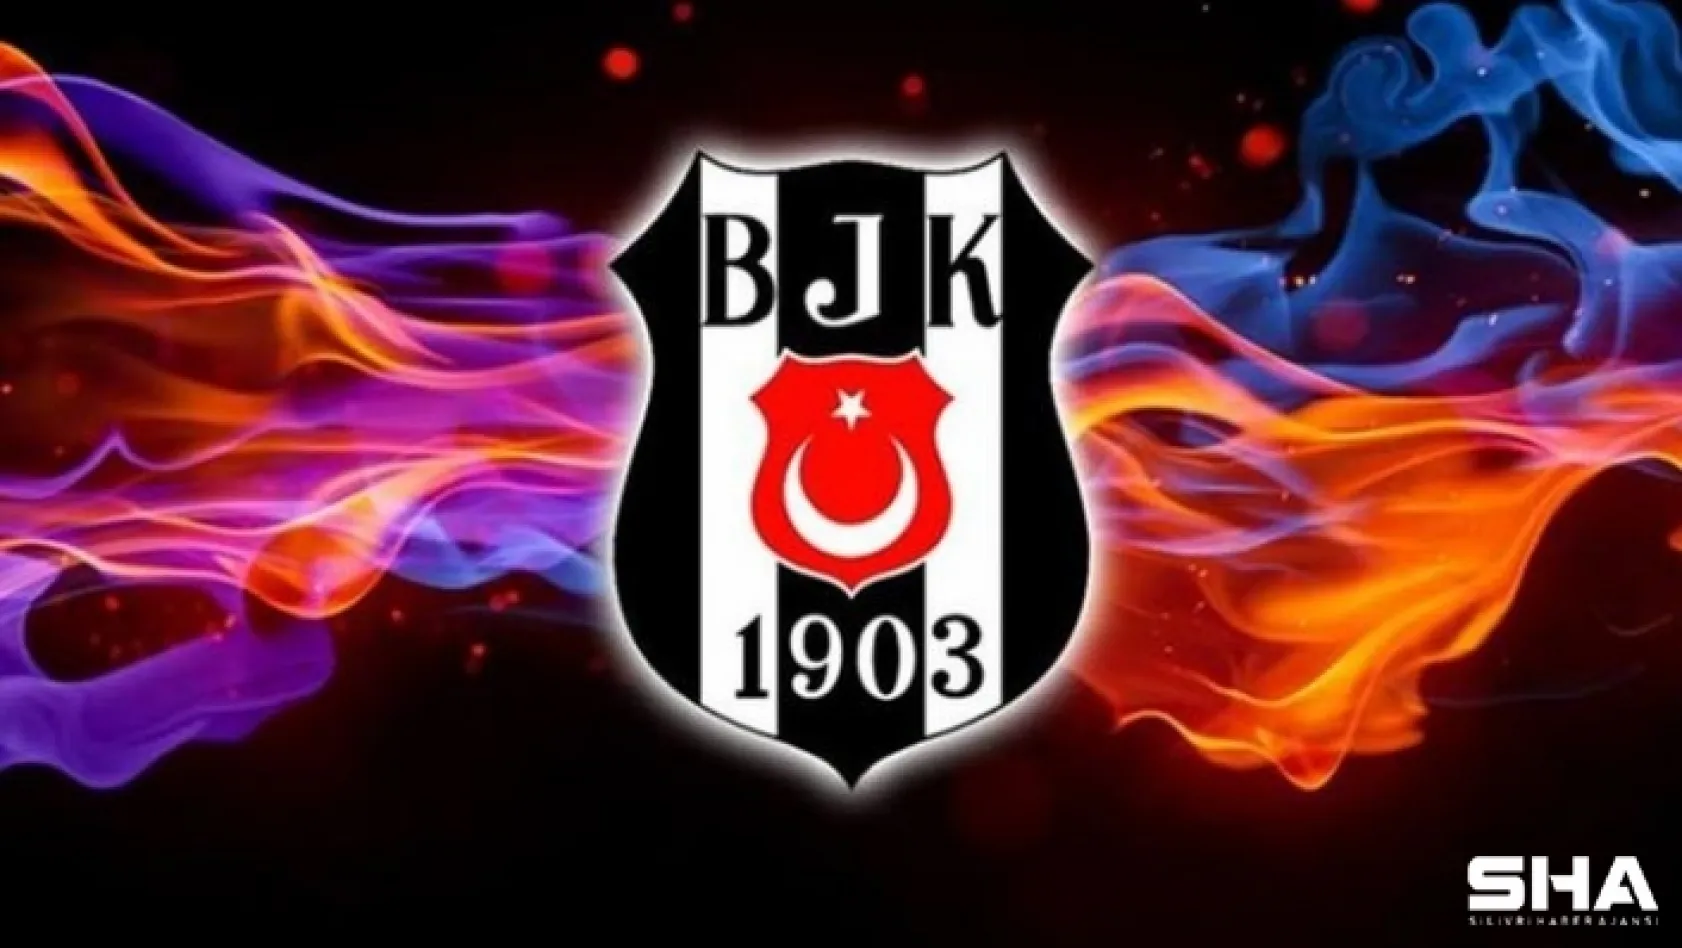 Süper Lig'de 2020-2021 sezonu şampiyonu Beşiktaş!